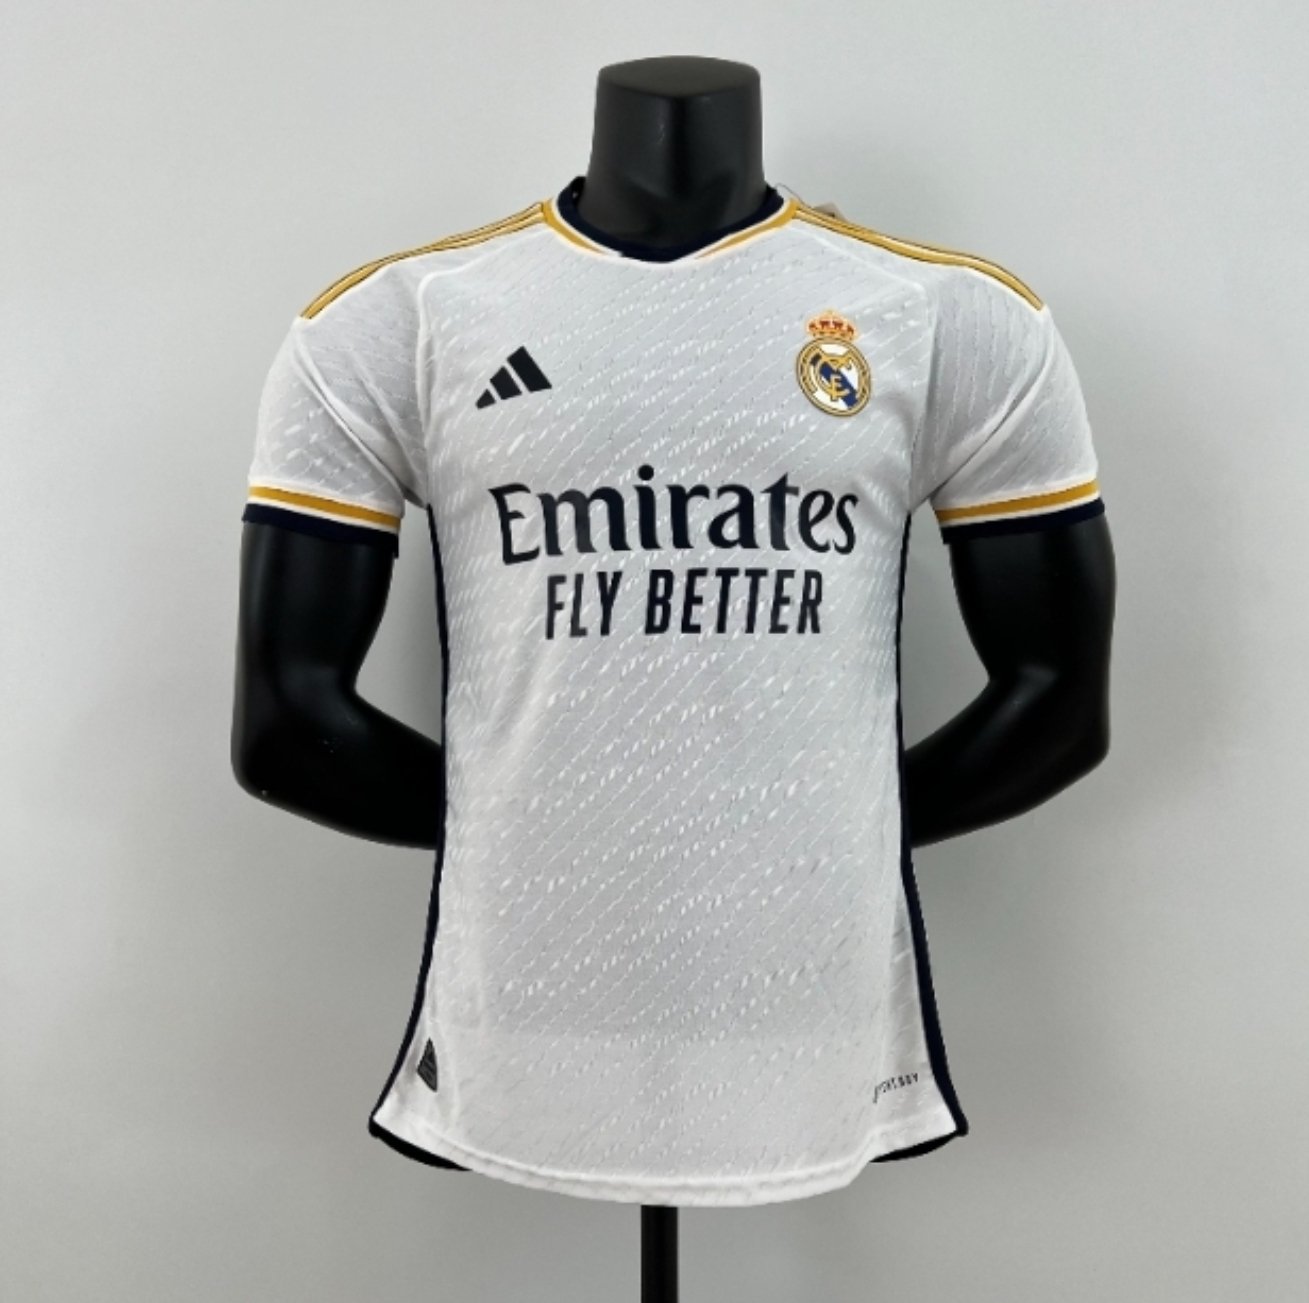 Real Madrid C.F. on X: 🎨 ¡Hoy luciremos una camiseta de edición especial  para apoyar a la @Fun_Realmadrid! 🤩 👕  👉 Más  info:  #RealMadridOnTour, #FundaciónRM